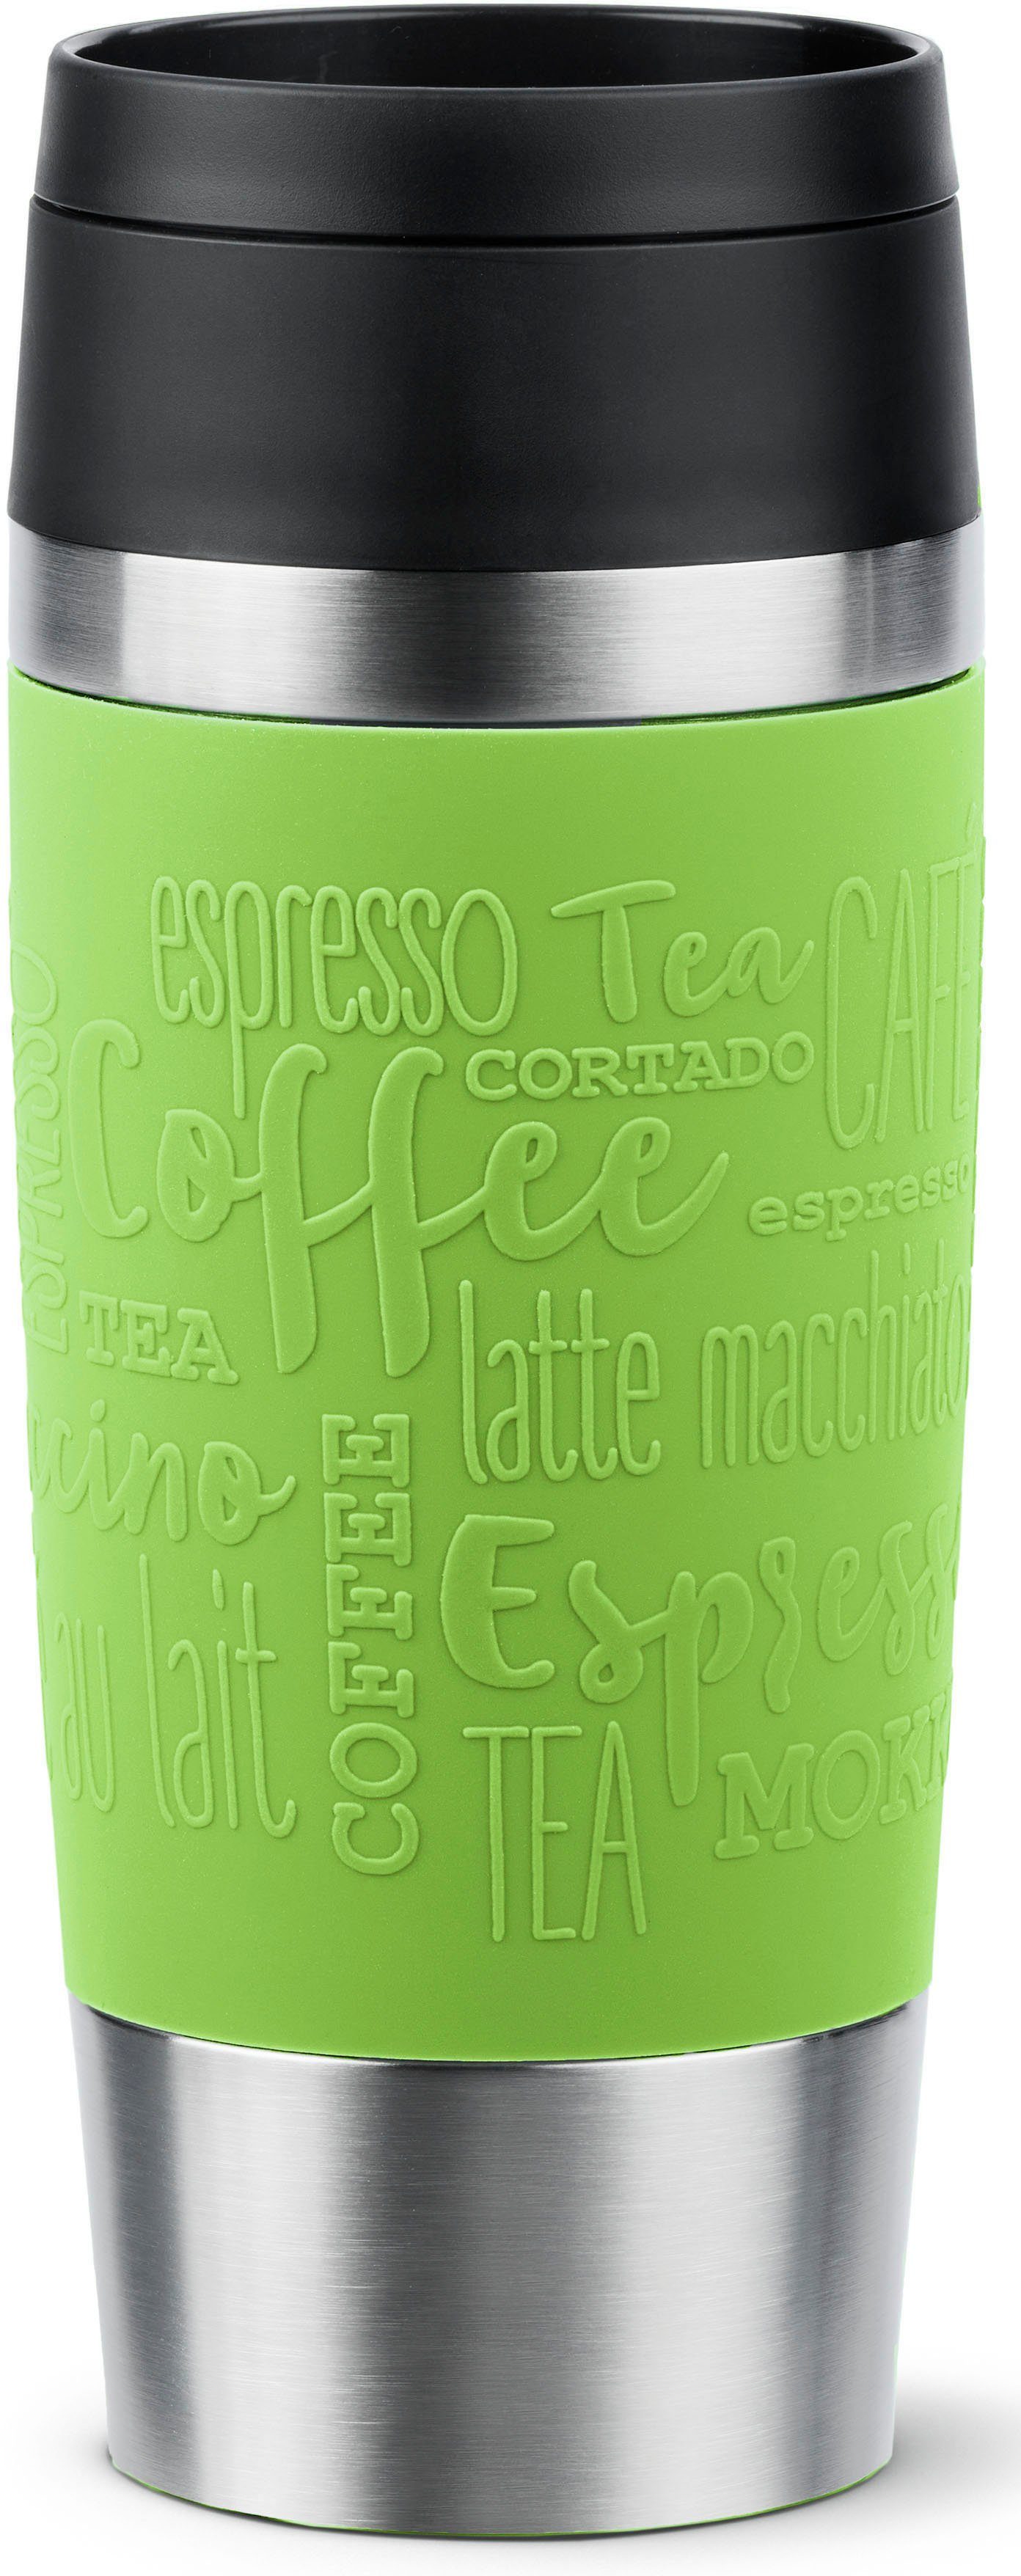 Emsa Thermobecher Travel Mug Classic, mit 360°-Trinköffnung, Edelstahl, Kunststoff, Silikon, 4h heiß, 8h kalt - 360 ml / 6h heiß, 12h kalt - 500 ml, 100% dicht